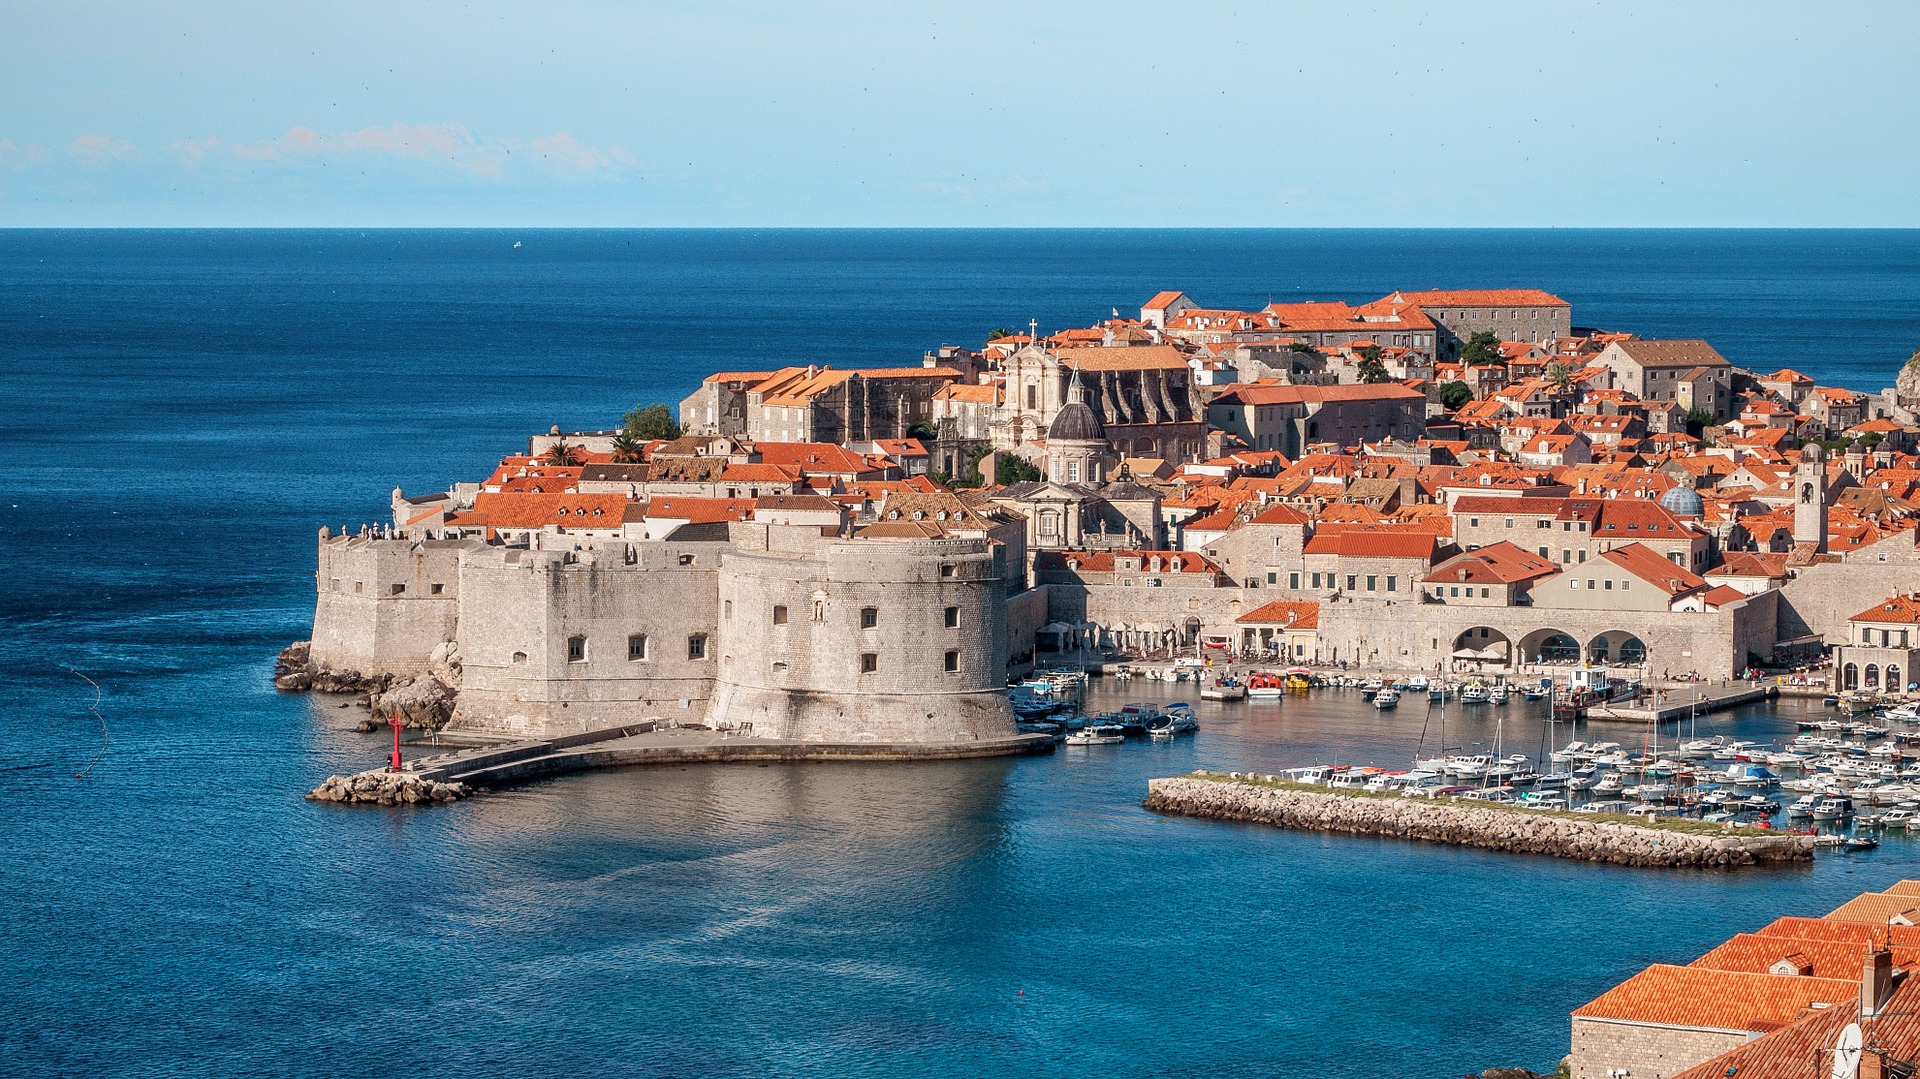 Chorwacja jest stosunkowo niewielkim, ale interesującym państwem z ciekawą, zawiłą historią oraz mnóstwem urokliwych miejsc wartych odwiedzenia. 